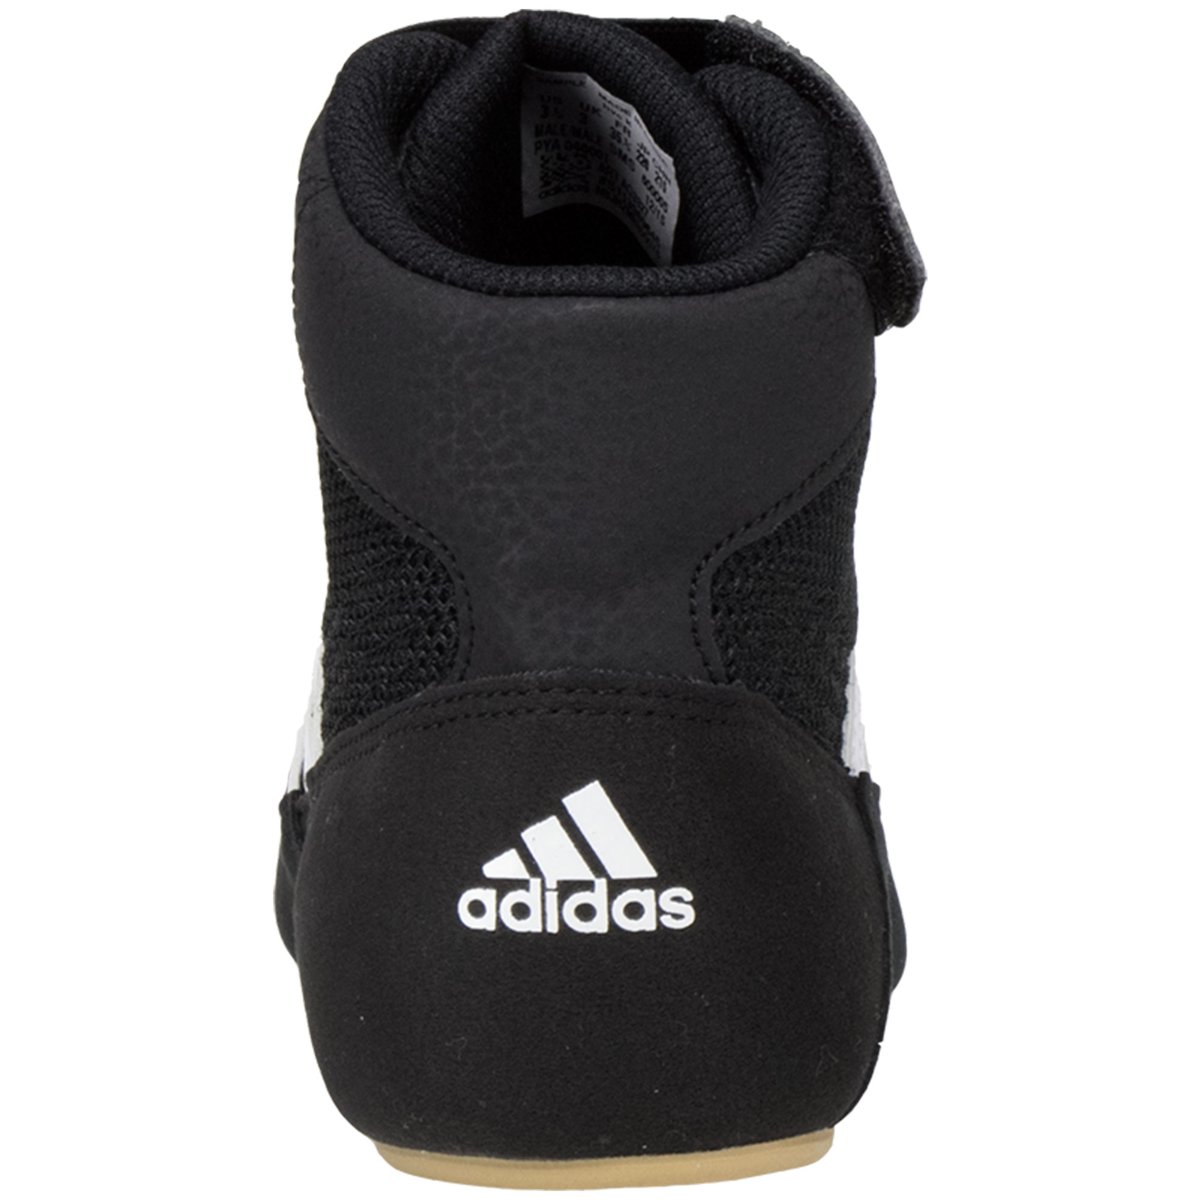 adidas Men's HVC Wrestling Shoe, Black/White/Iron Metallic, 10.5